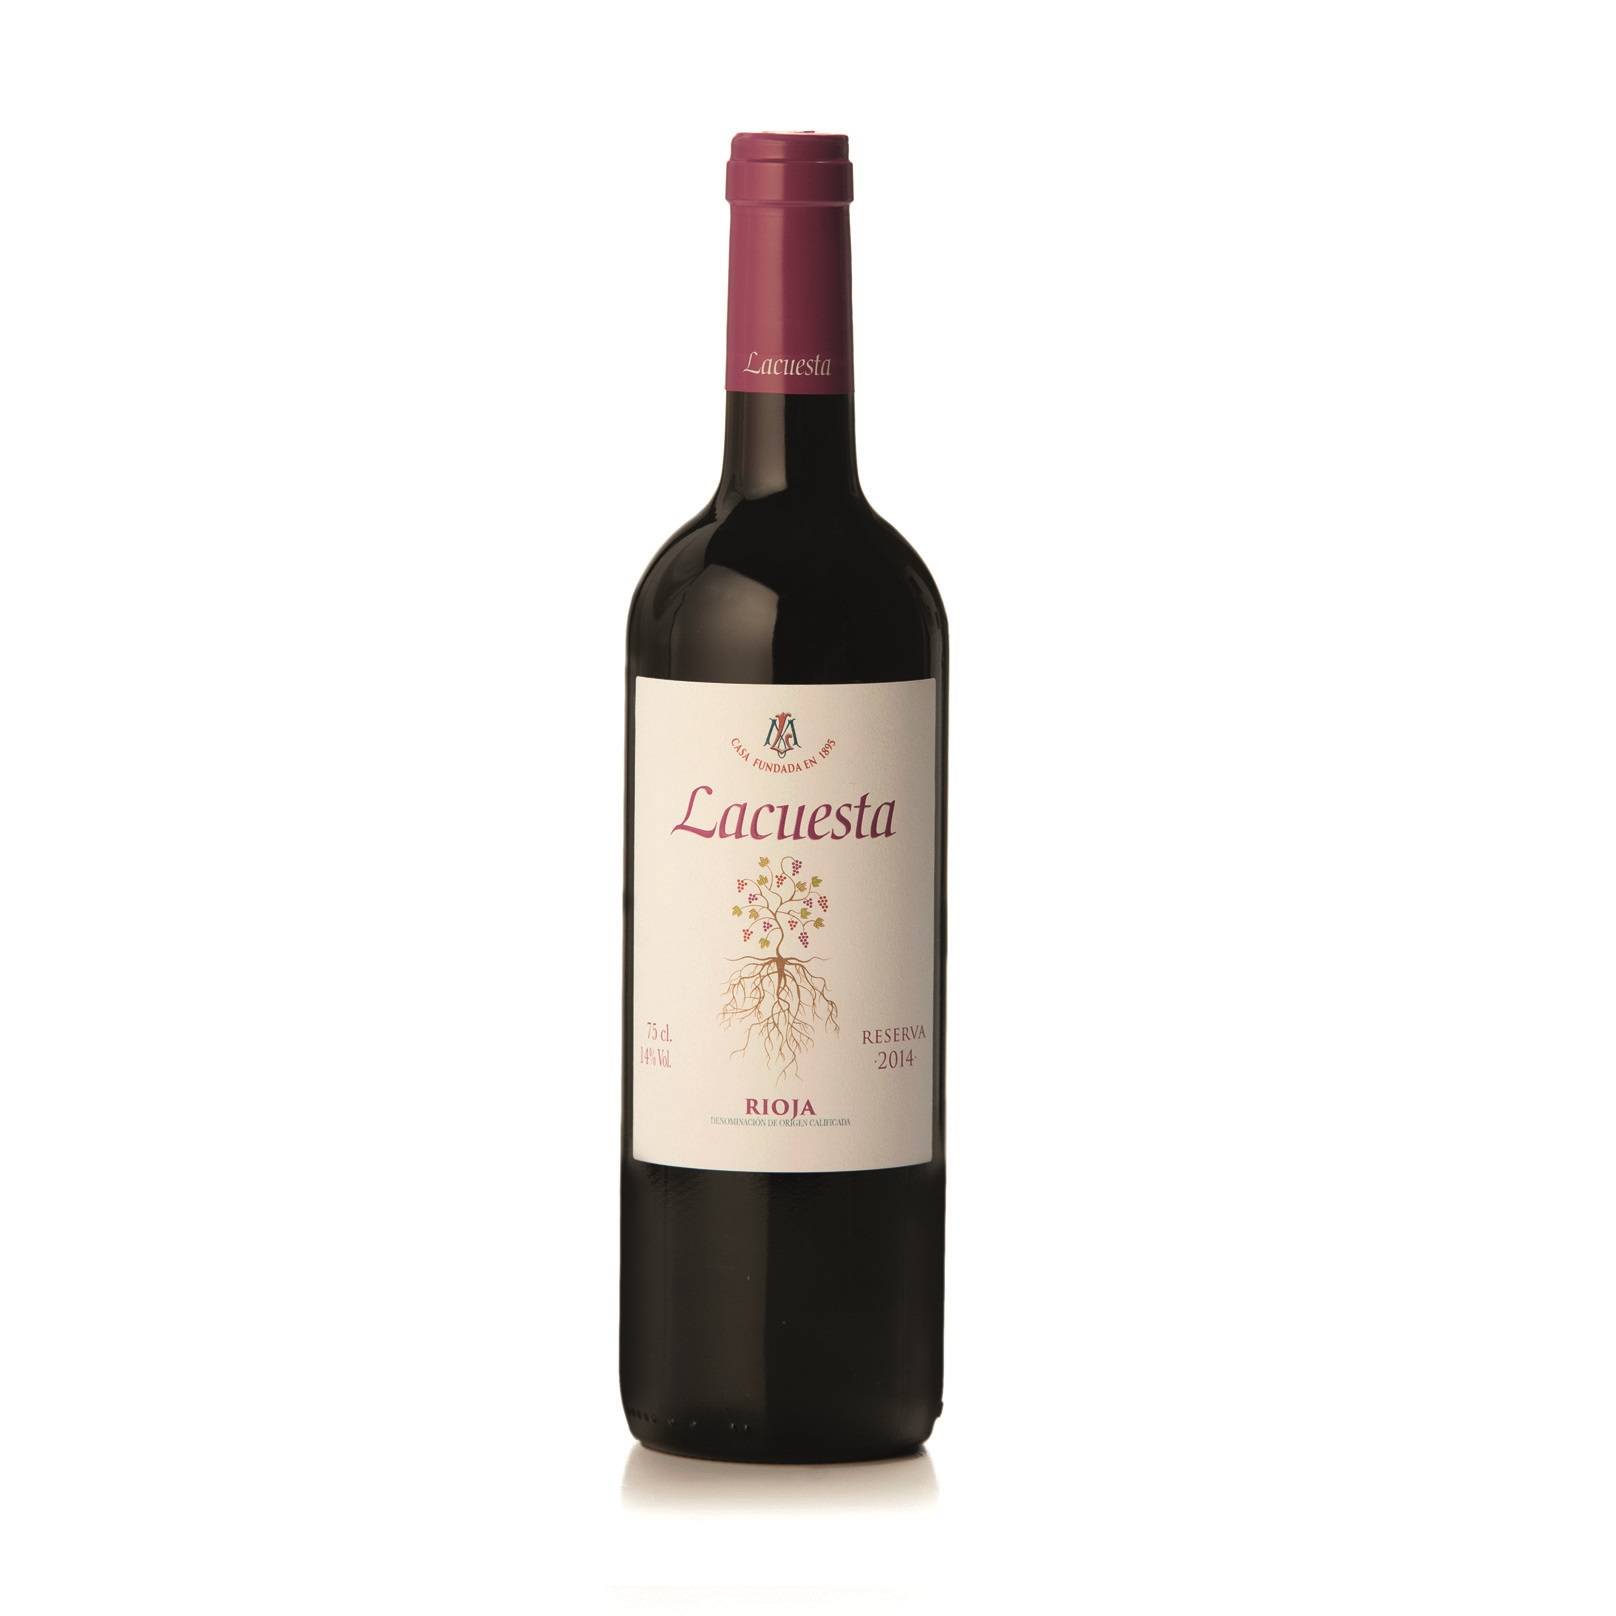 Vin rosu Reserva Rioja Martinez Lacuesta 2014 14.00% vol, 0.75L